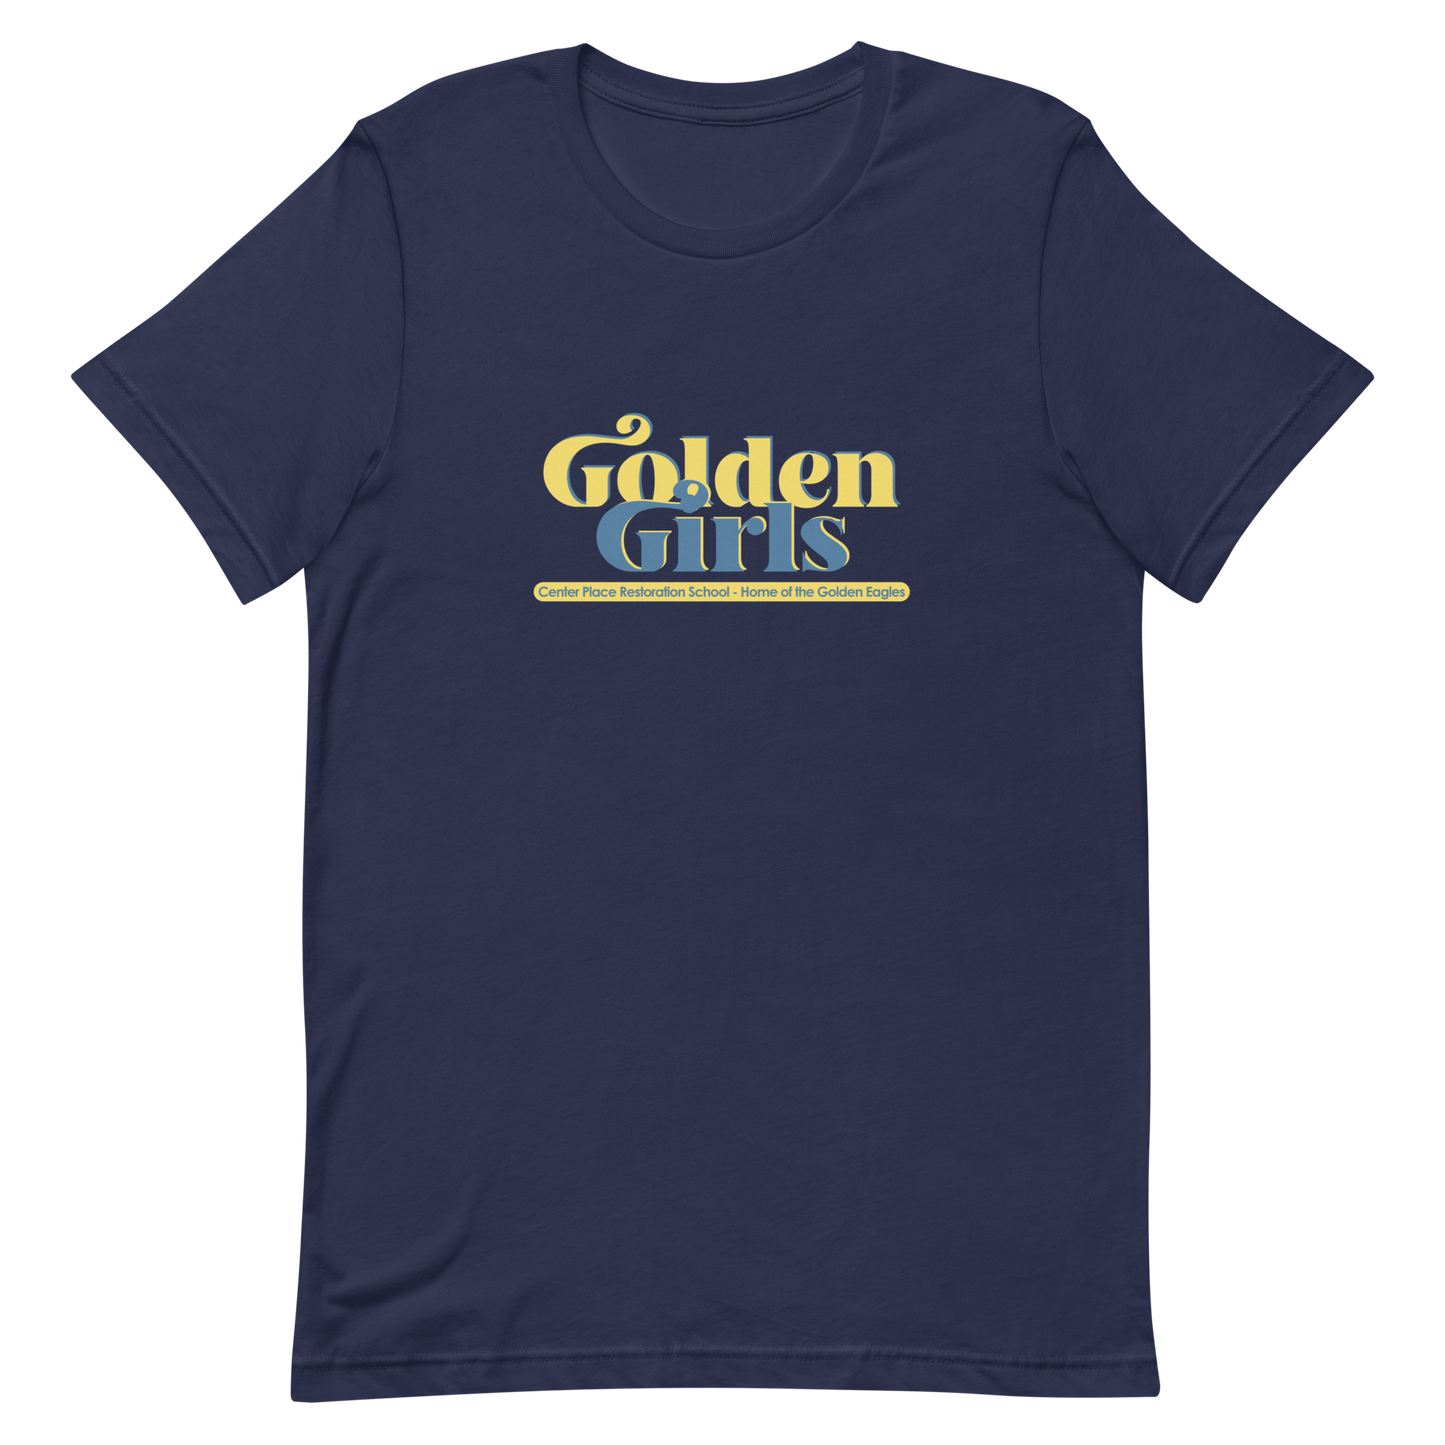 Golden Girls shirt